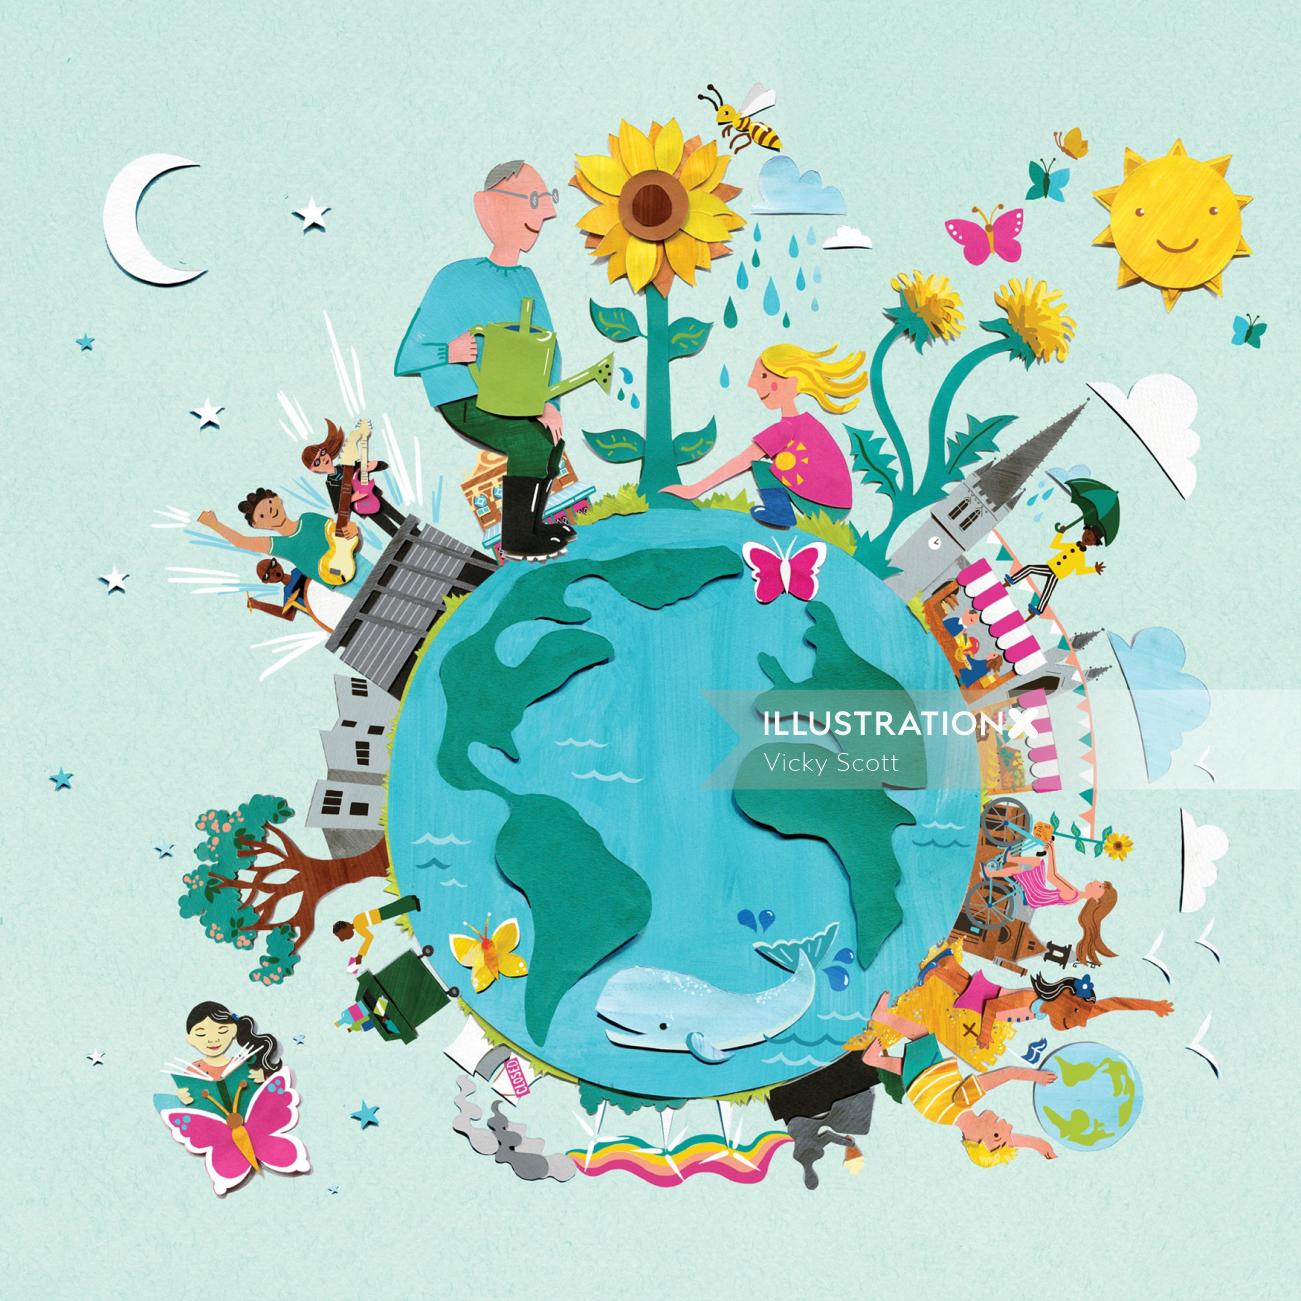 Design de cartaz do festival de meio ambiente